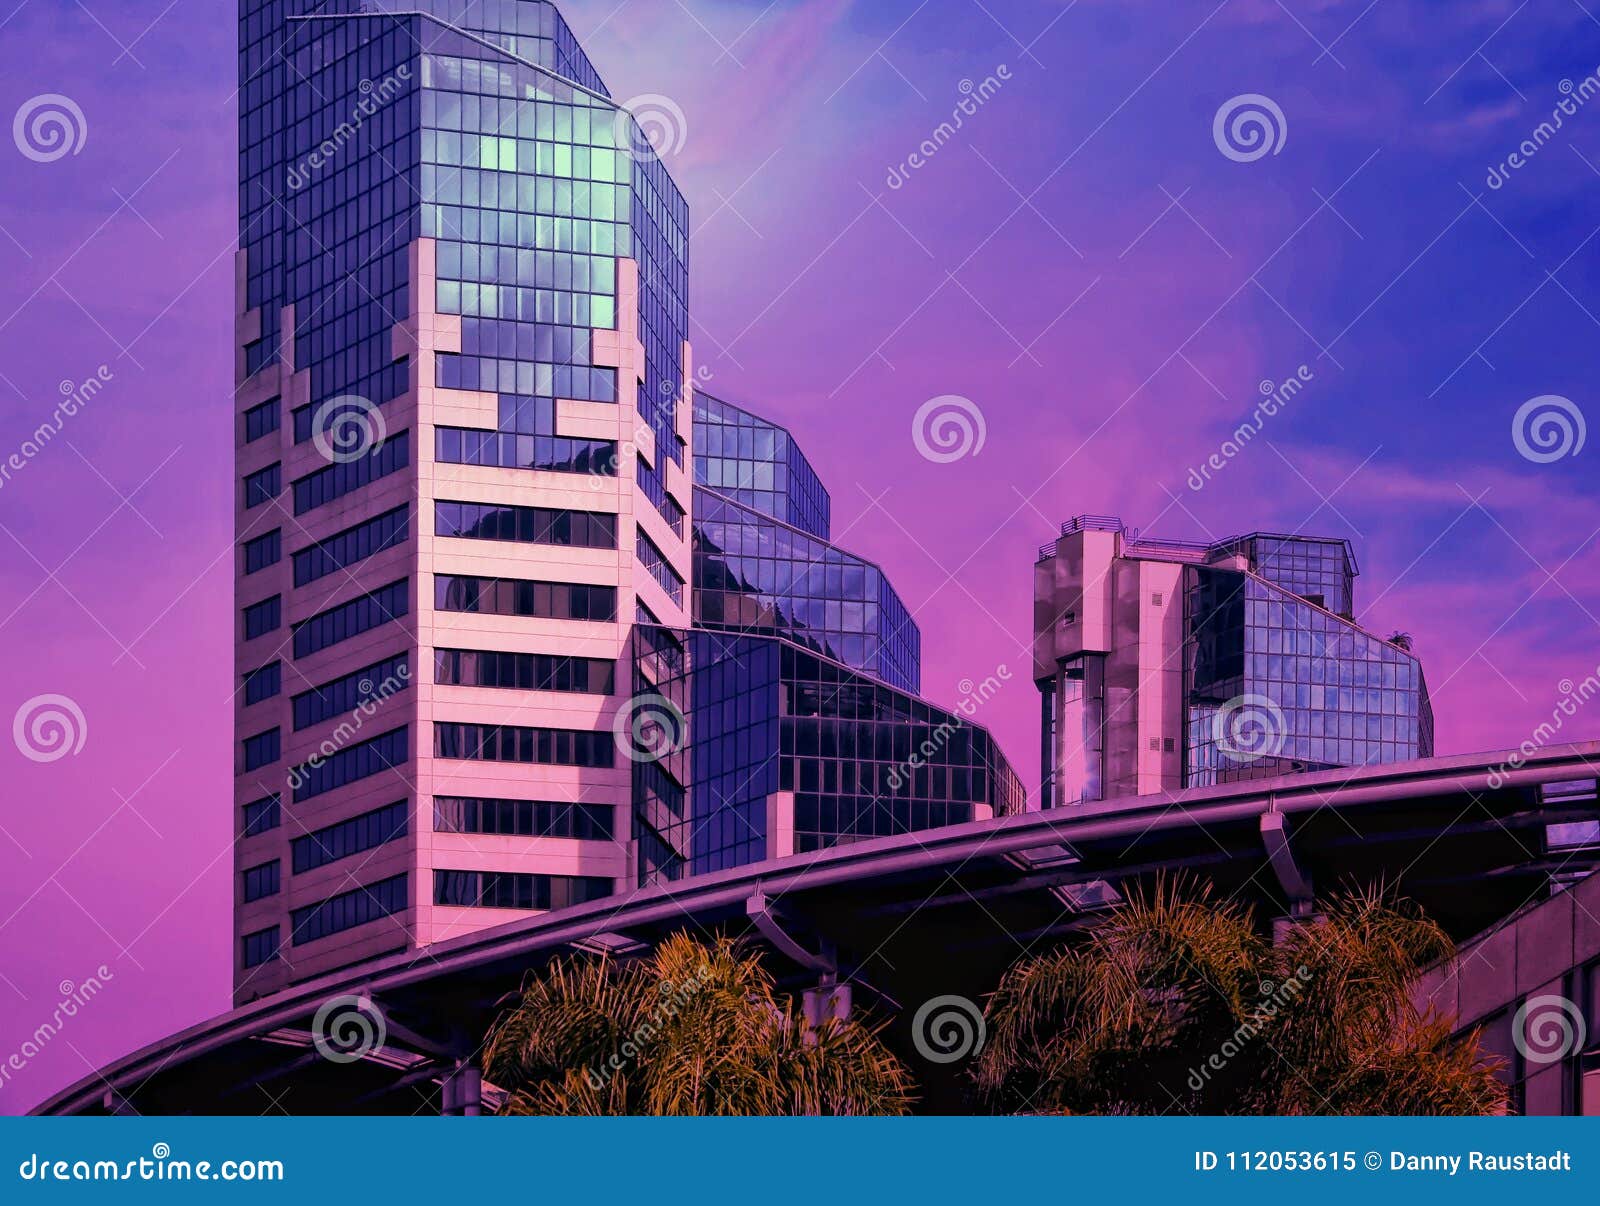 urban downtown skyline modern buildings in a purple haze